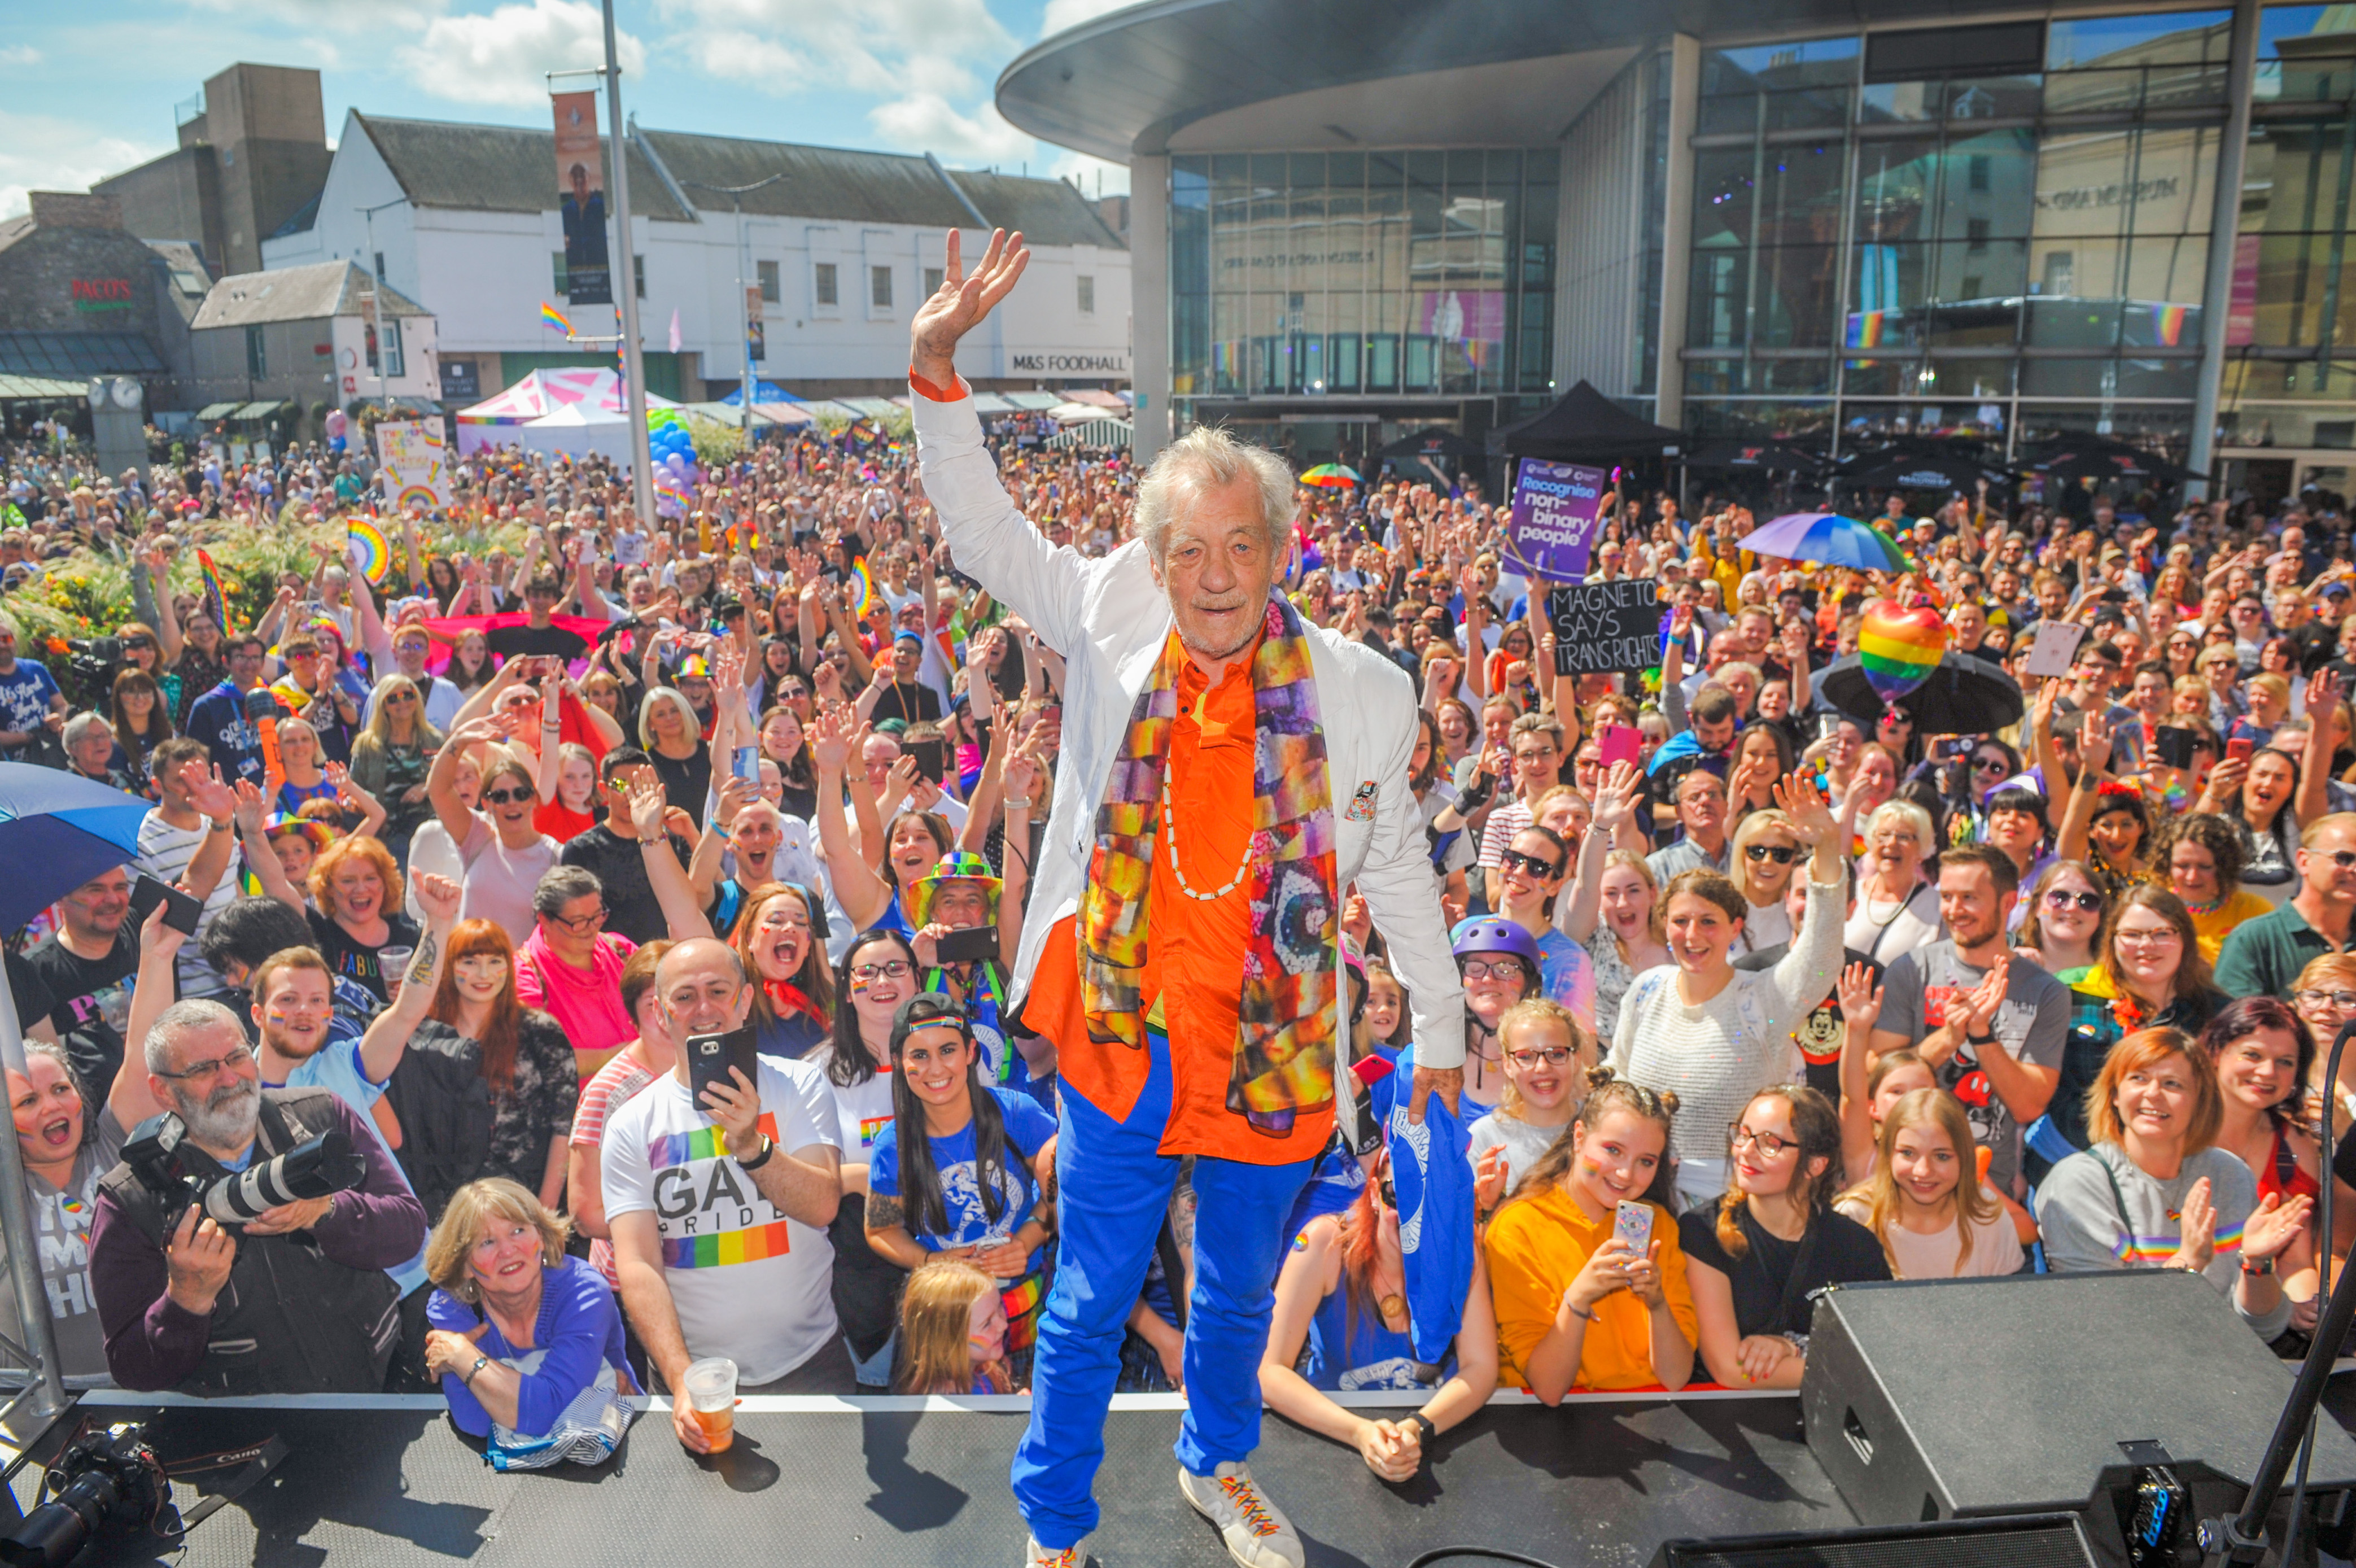 Sir Ian McKellen on stage at Perthshire Pride